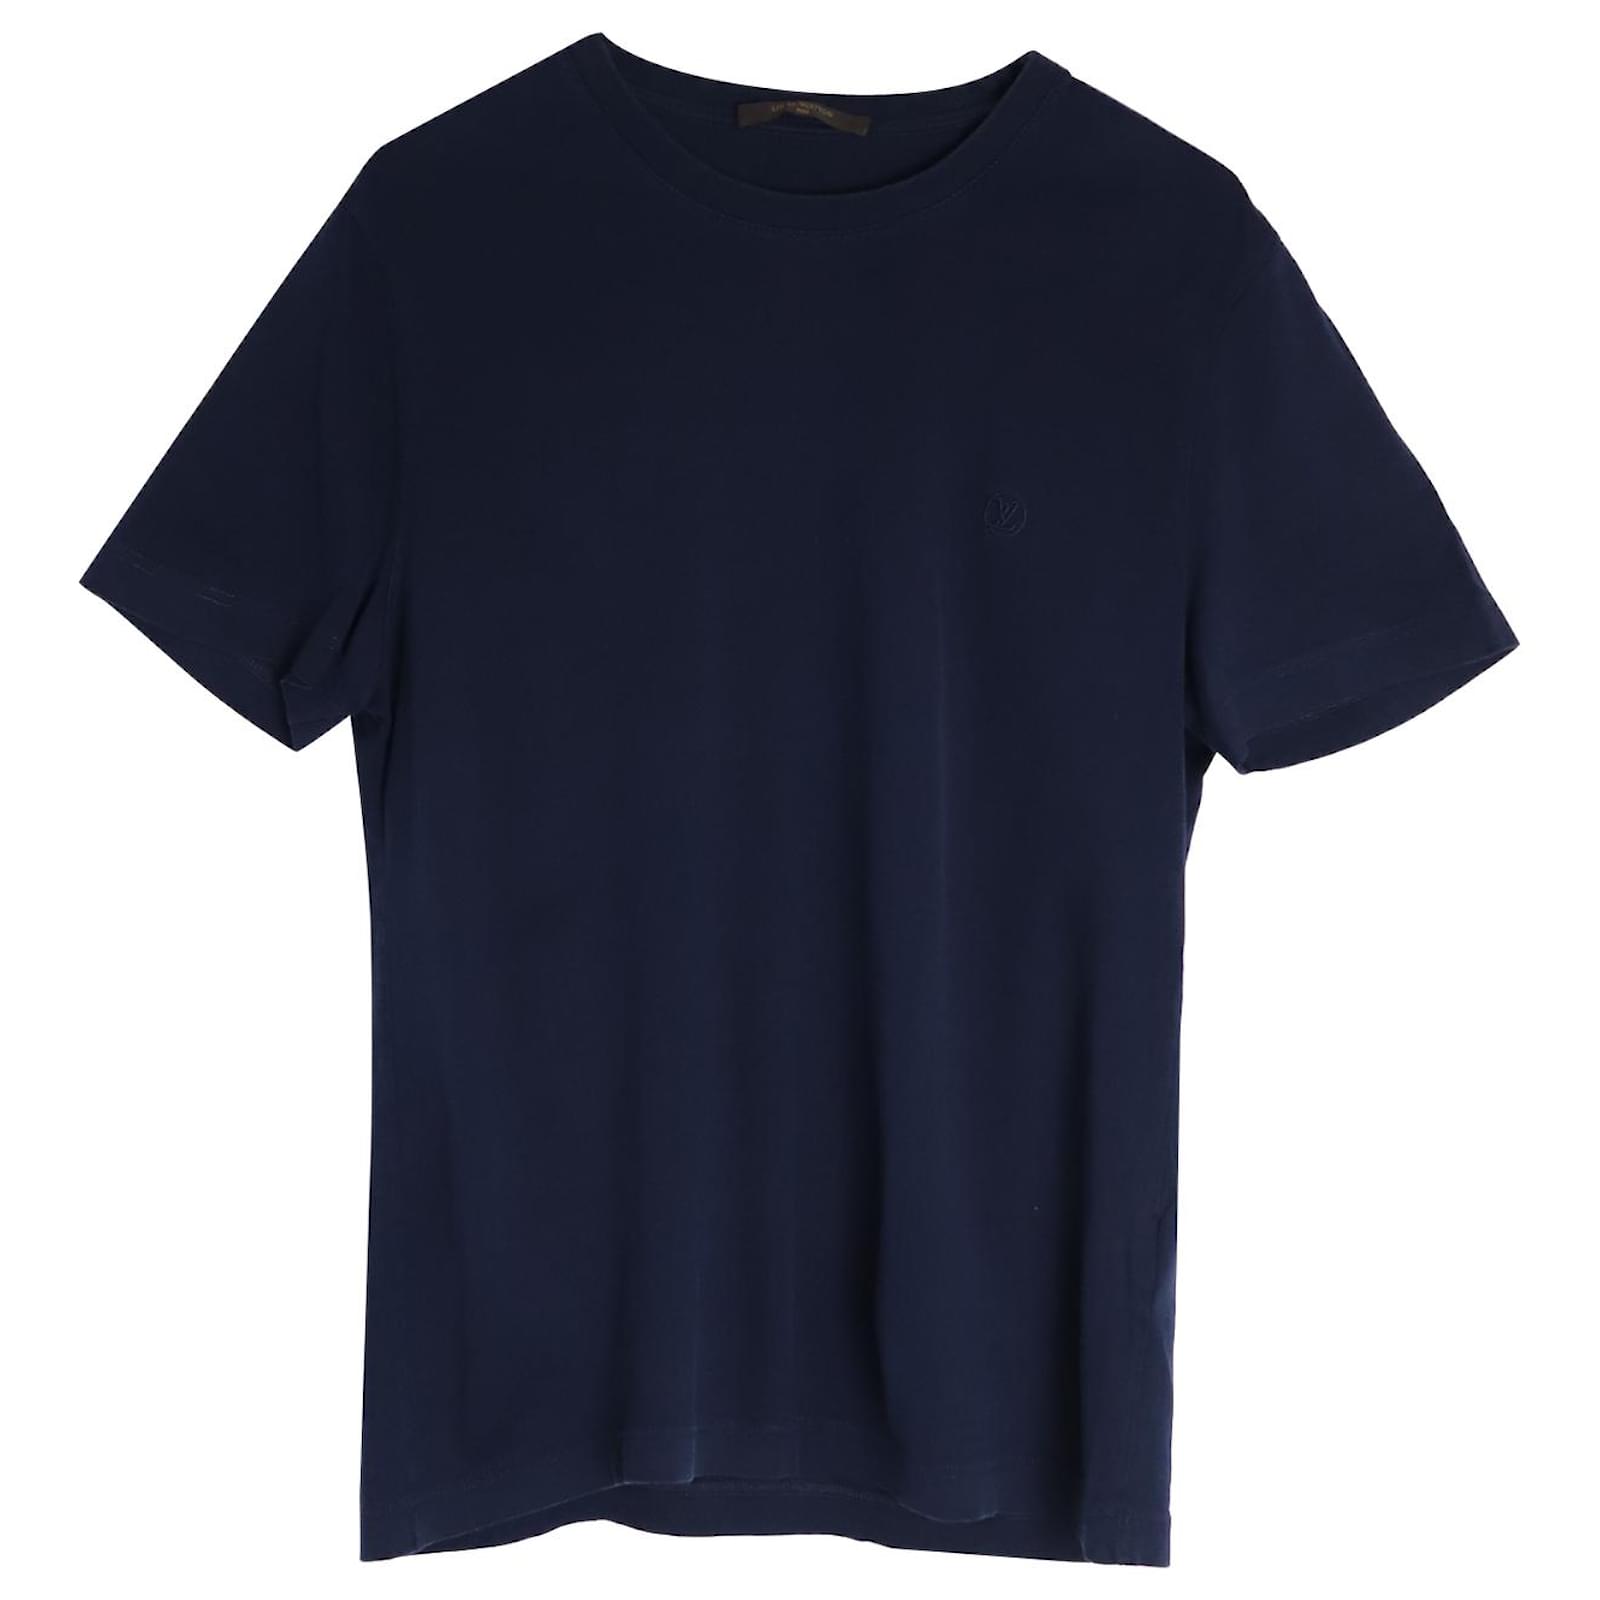 Louis Vuitton Classic Cotton T-Shirt